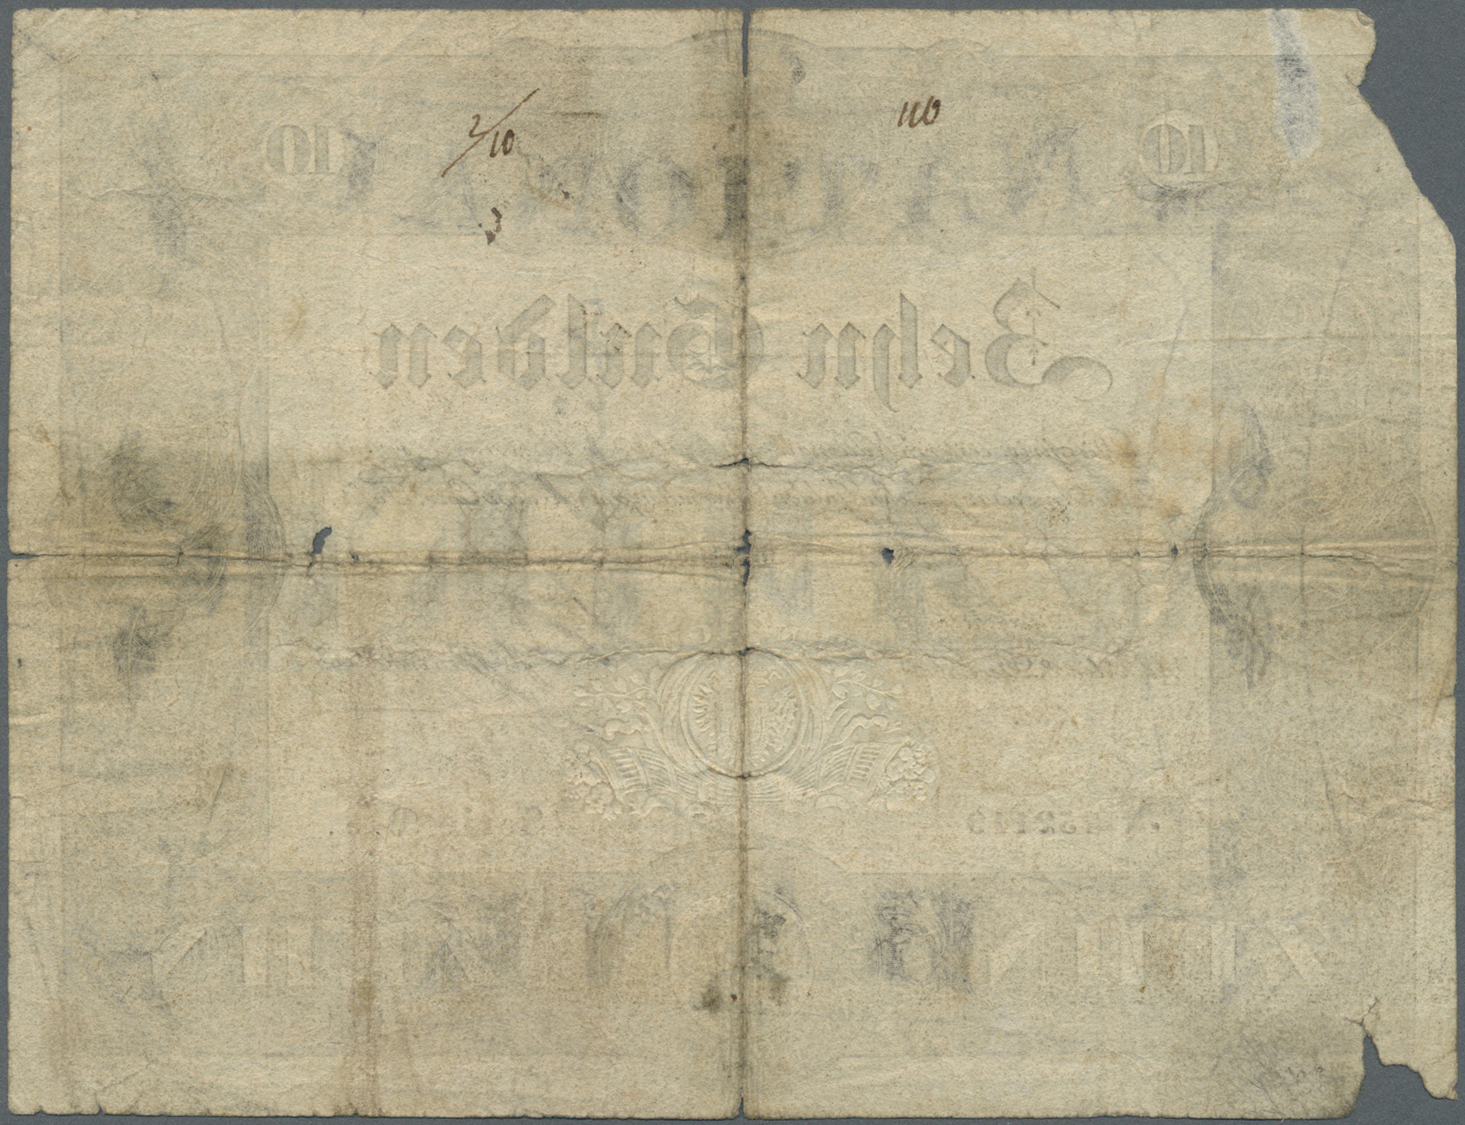 00118 Austria / Österreich:  Privilegirte Oesterreichische National-Bank 10 Gulden 1834, P.A69a, Highly Rare Note In Wor - Austria